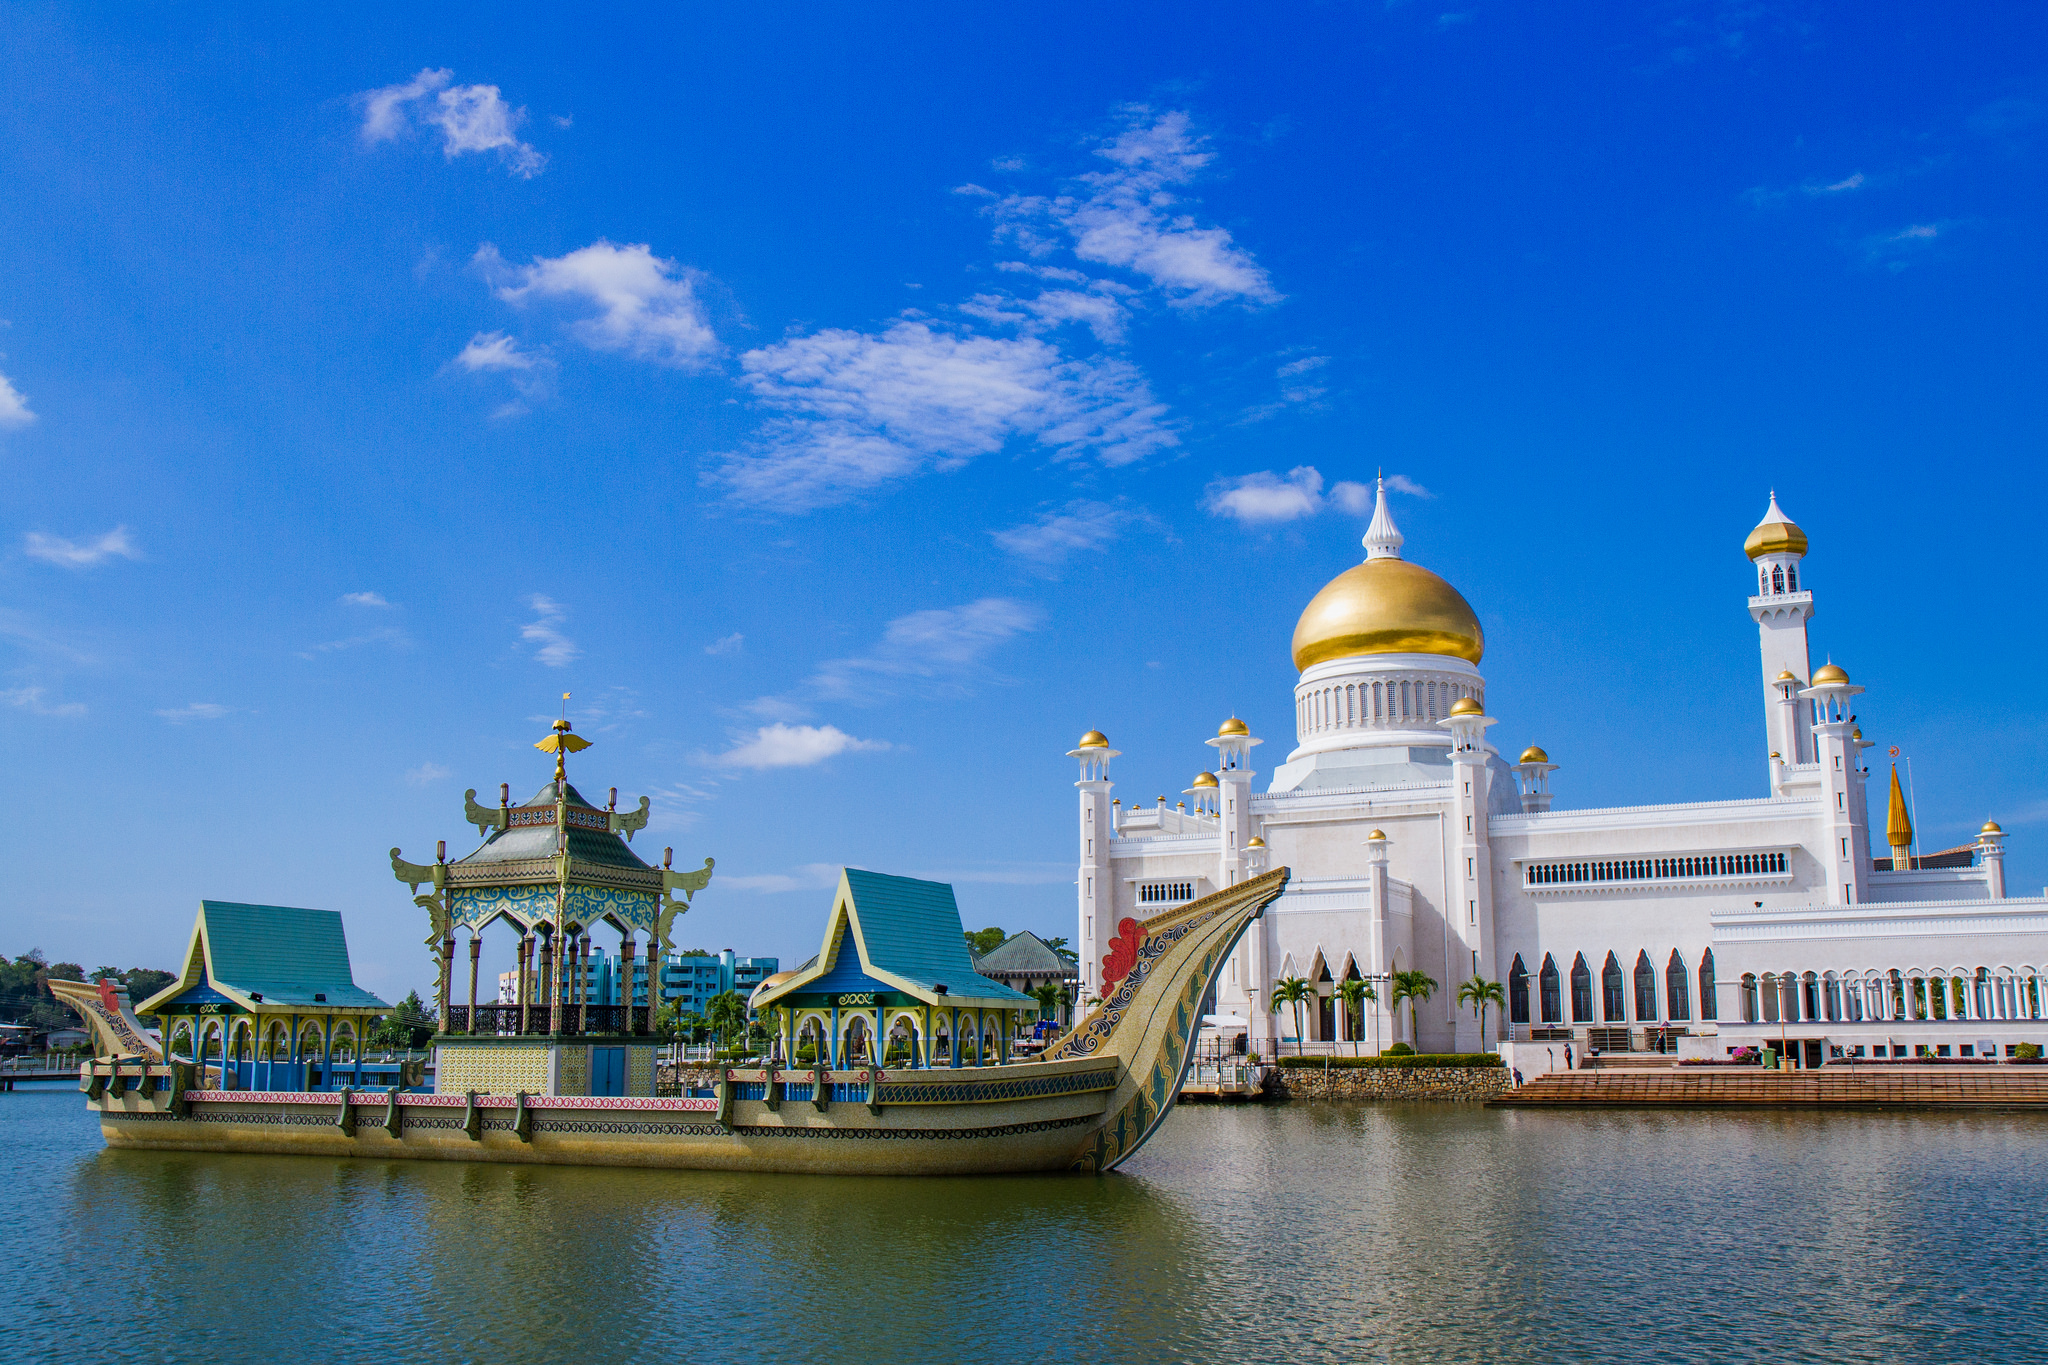 Sultan Omar Ali Saifuddin Mosque (Brunei):